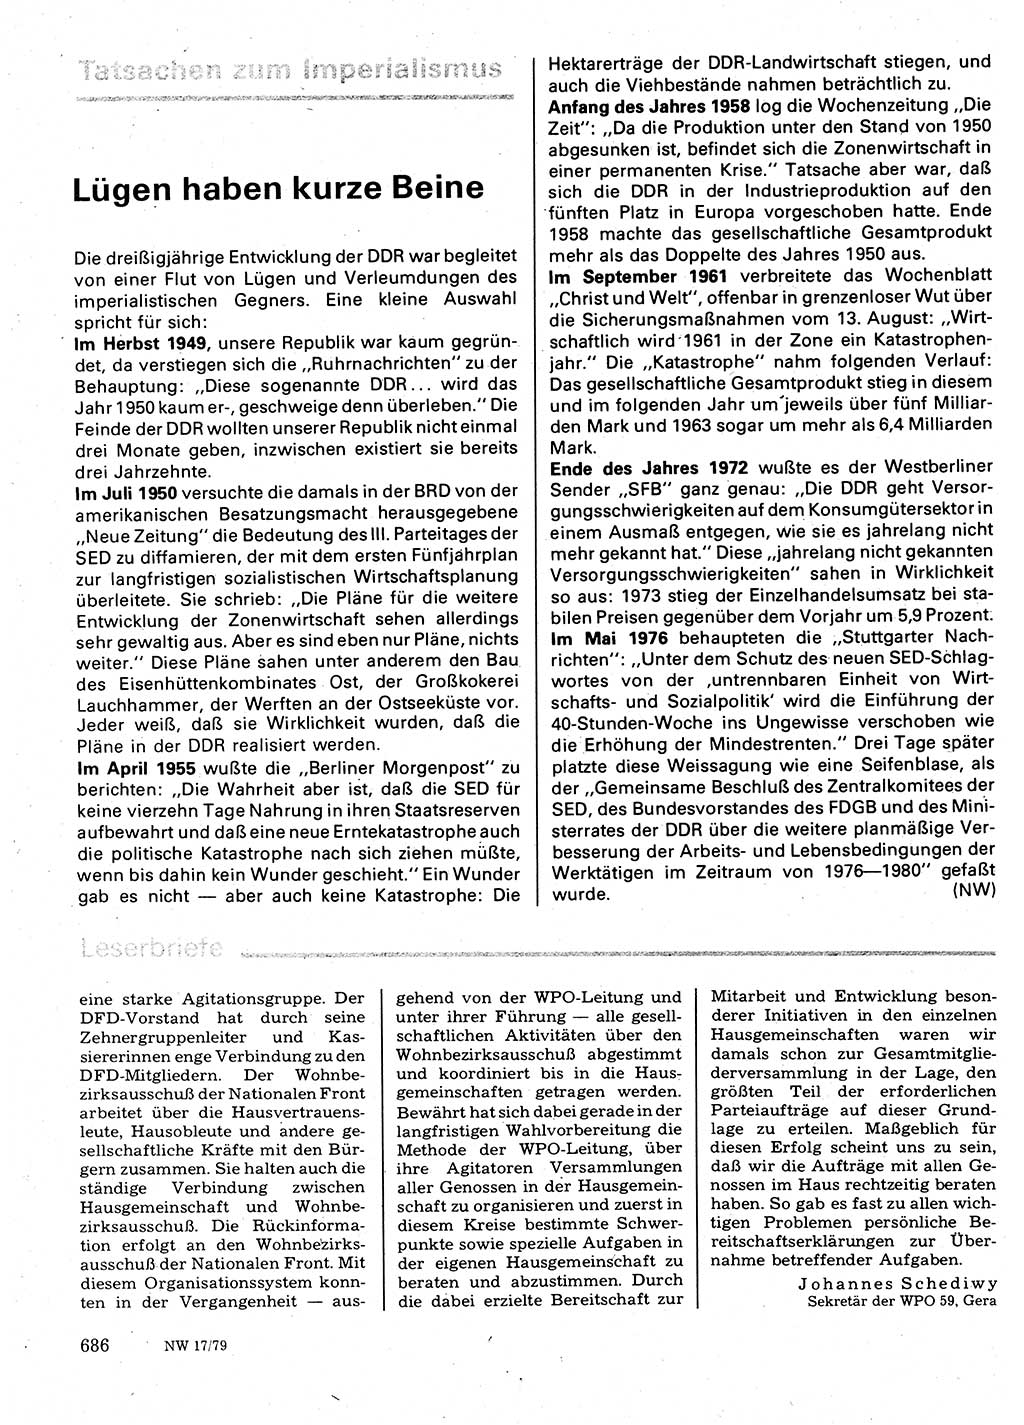 Neuer Weg (NW), Organ des Zentralkomitees (ZK) der SED (Sozialistische Einheitspartei Deutschlands) für Fragen des Parteilebens, 34. Jahrgang [Deutsche Demokratische Republik (DDR)] 1979, Seite 686 (NW ZK SED DDR 1979, S. 686)